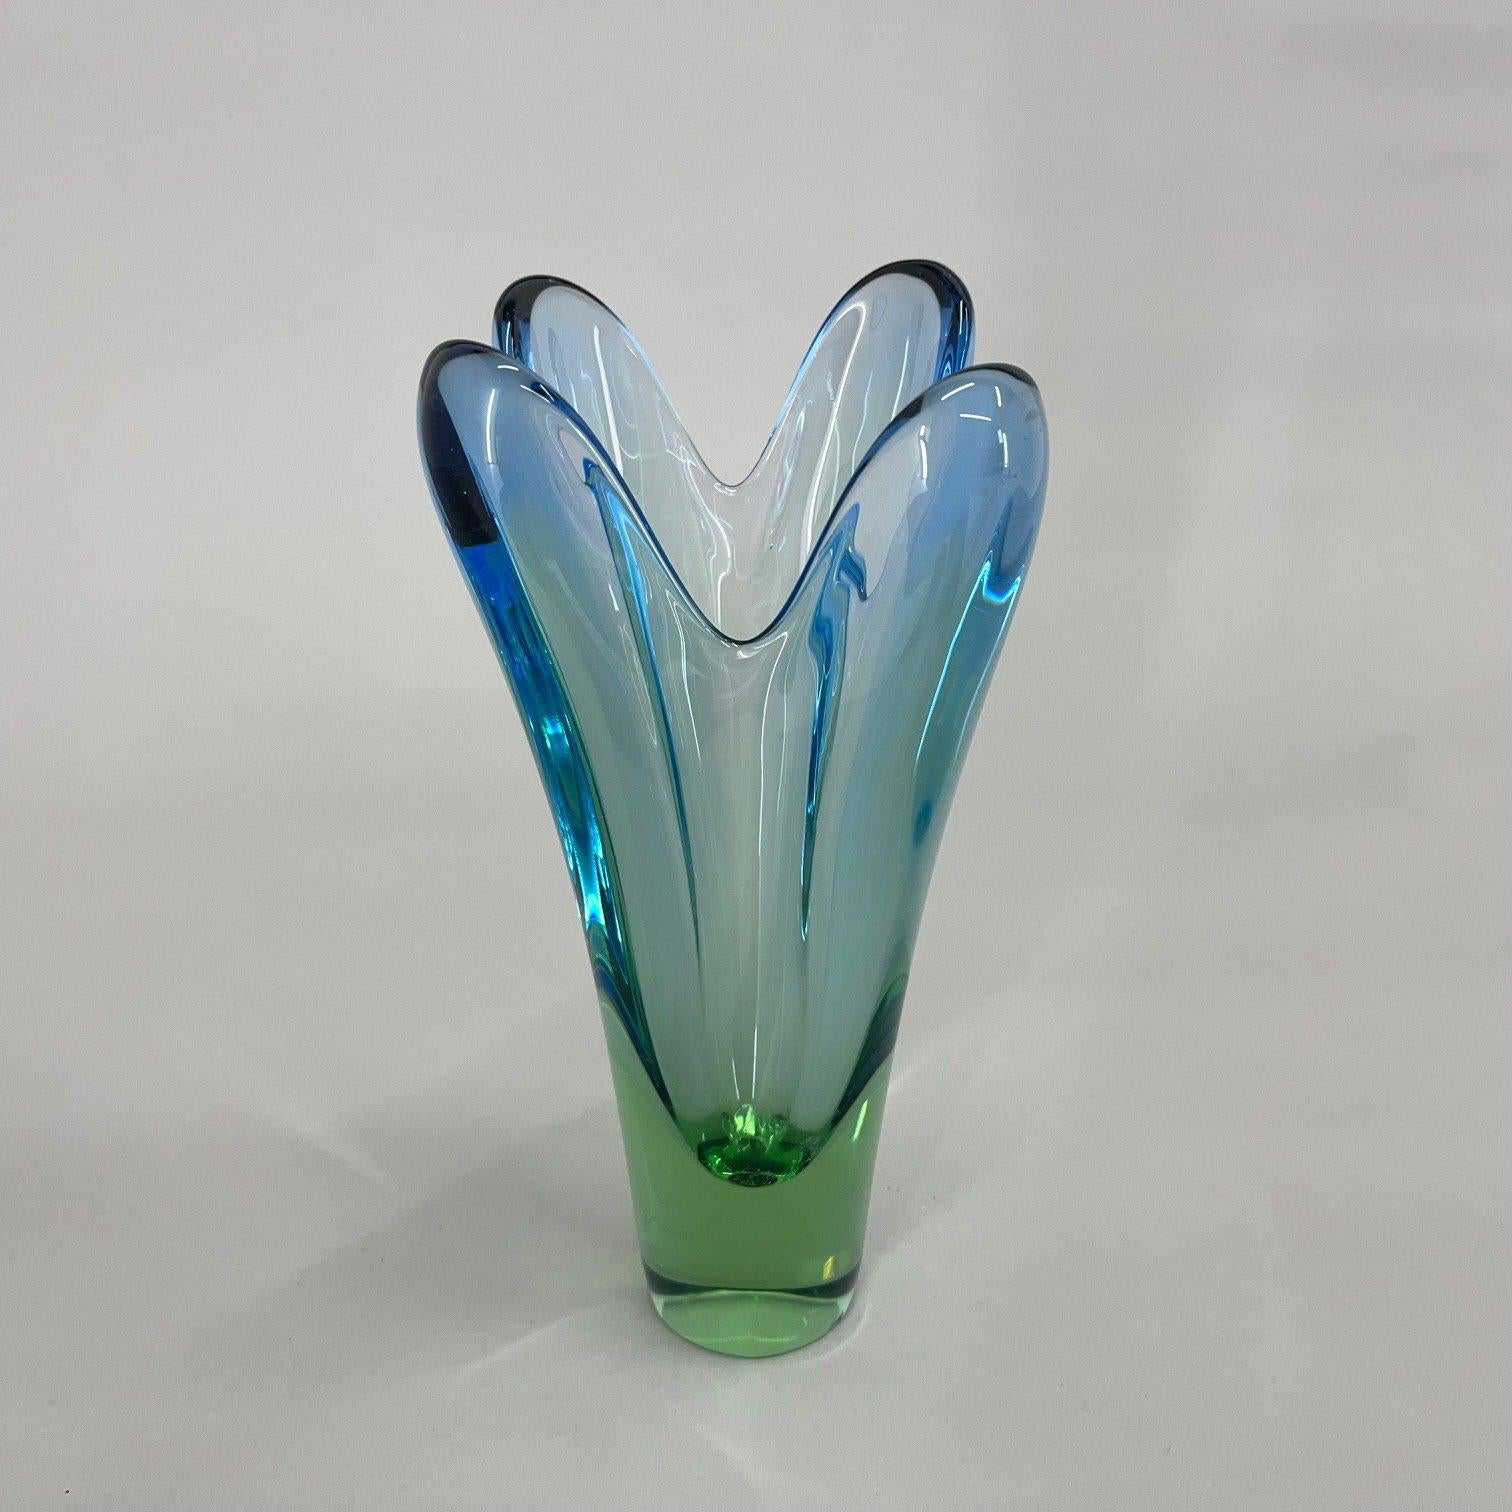 Czech Art Glass Vase by Designer Josef Hospodka, 1960's